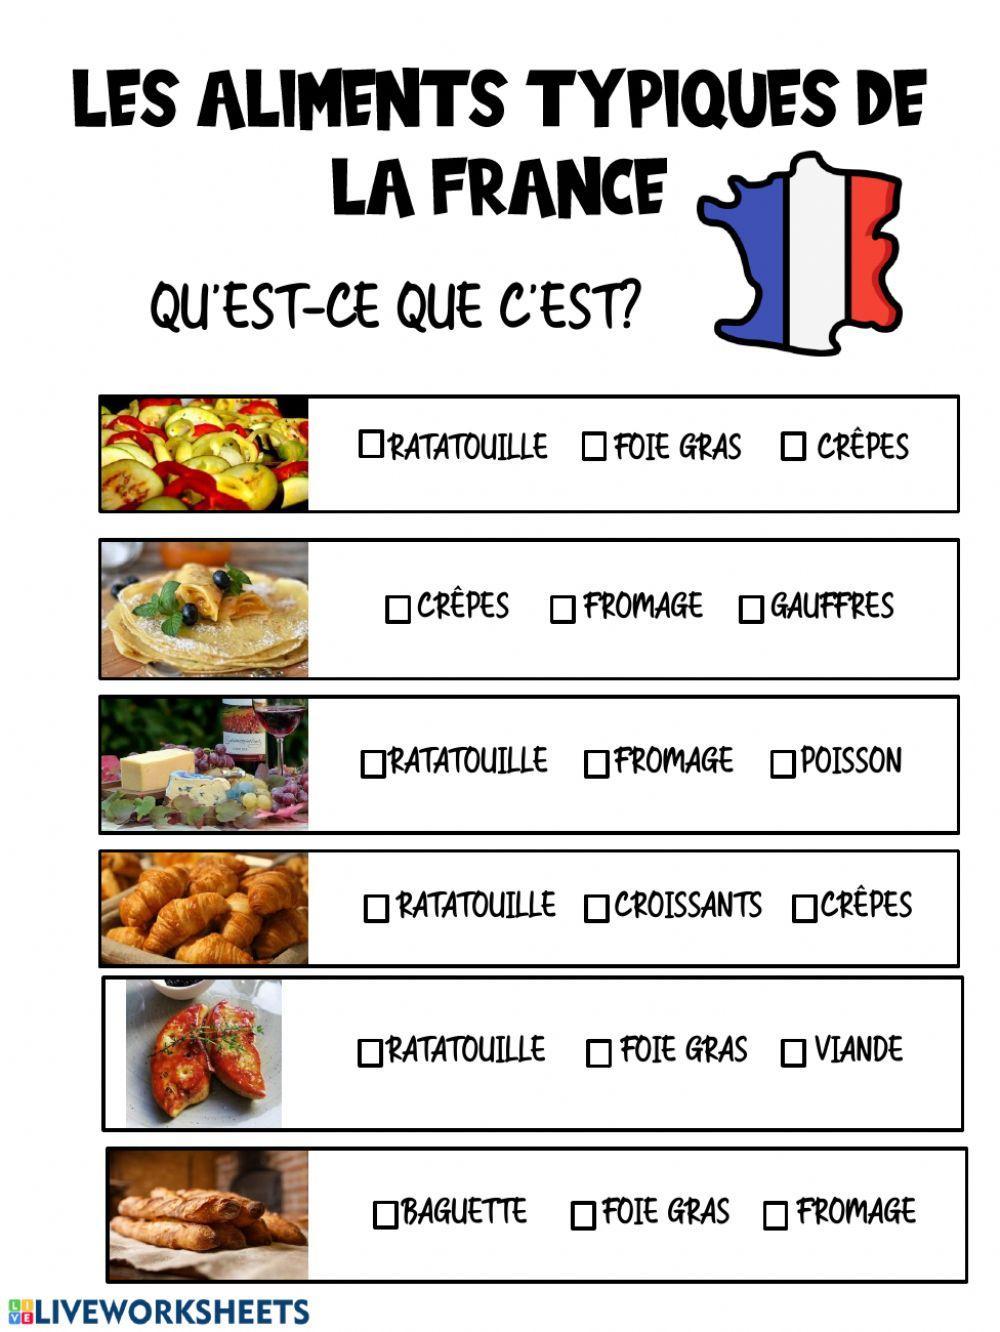 Aliments typiques de la France